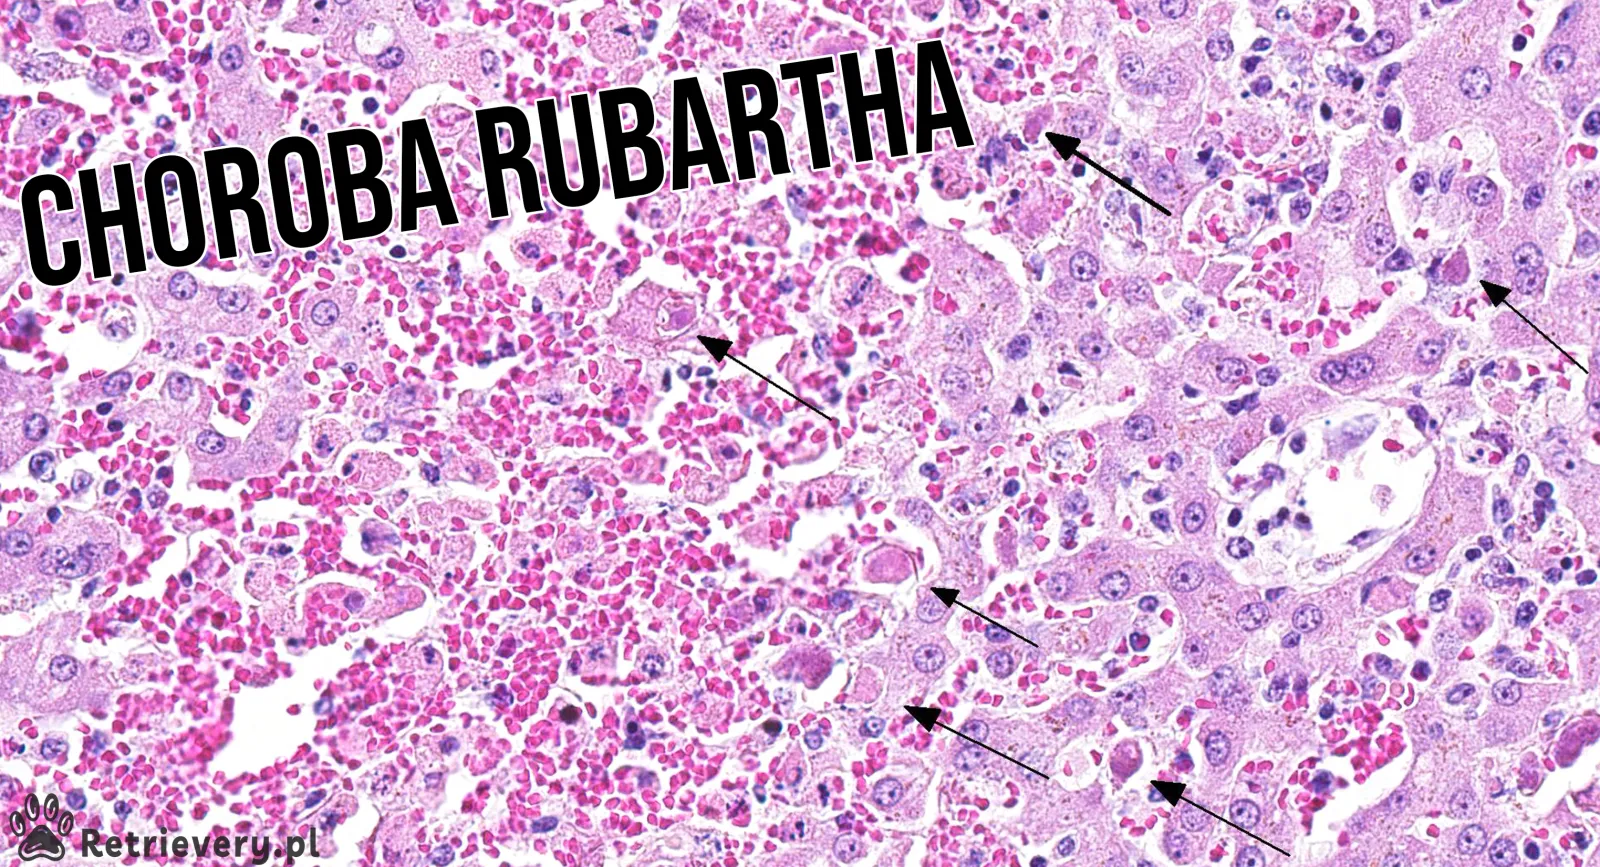 Choroba Rubartha: cichy zabójca psów - objawy, diagnostyka i profilaktyka